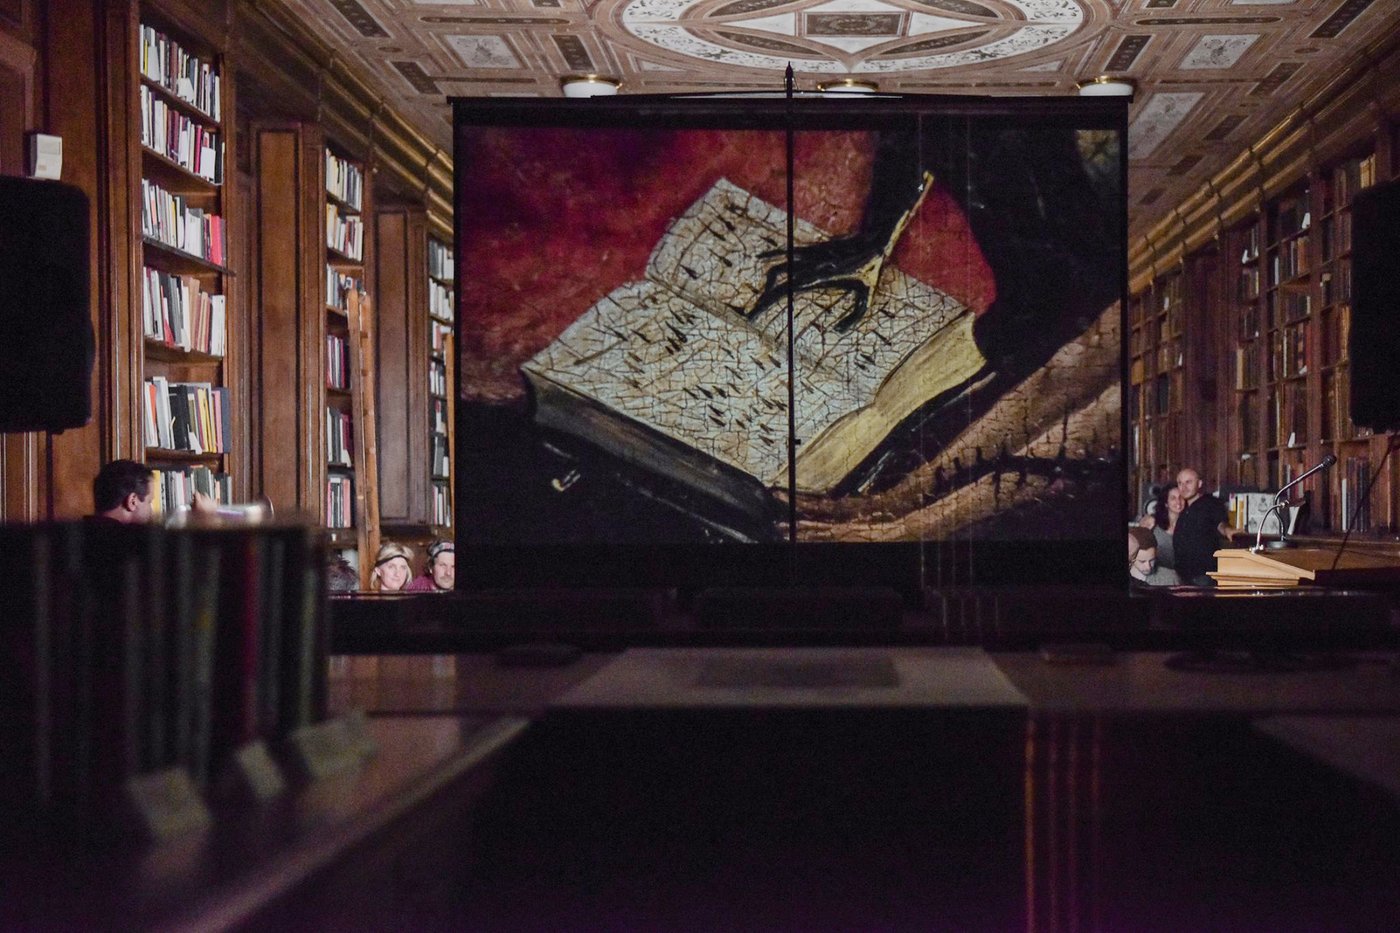 Bildausschnitt von Hieronymus Bosch projiziert auf eine Leinwand im Lesesaal der Bibliothek.